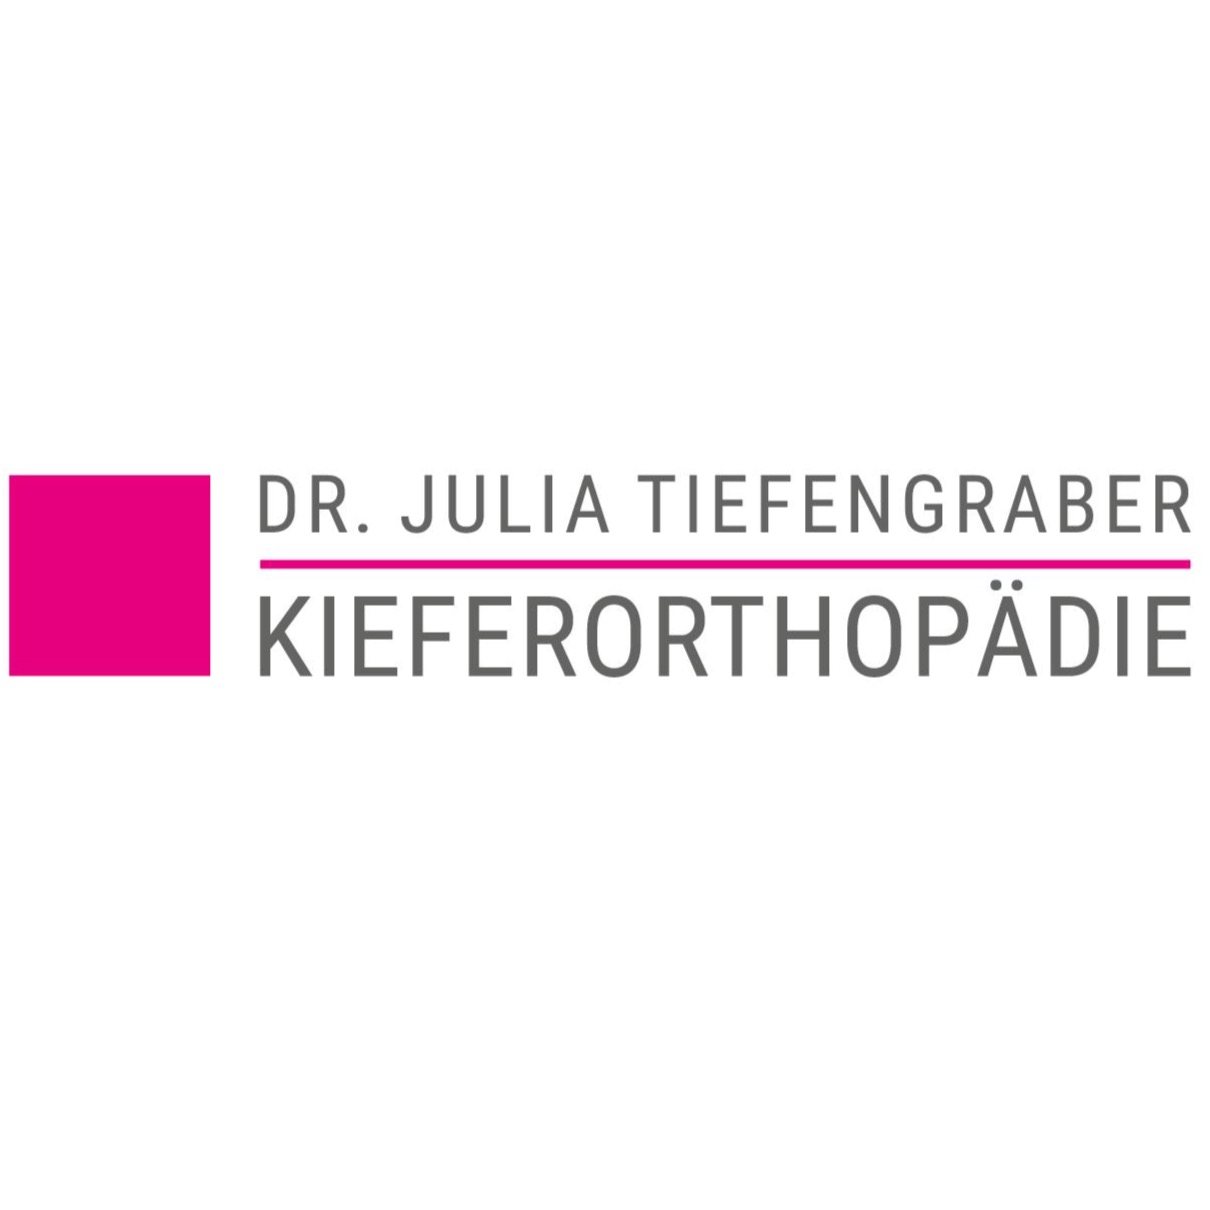 Kieferorthopädische Facharztpraxis Dr.Julia Tiefengraber  